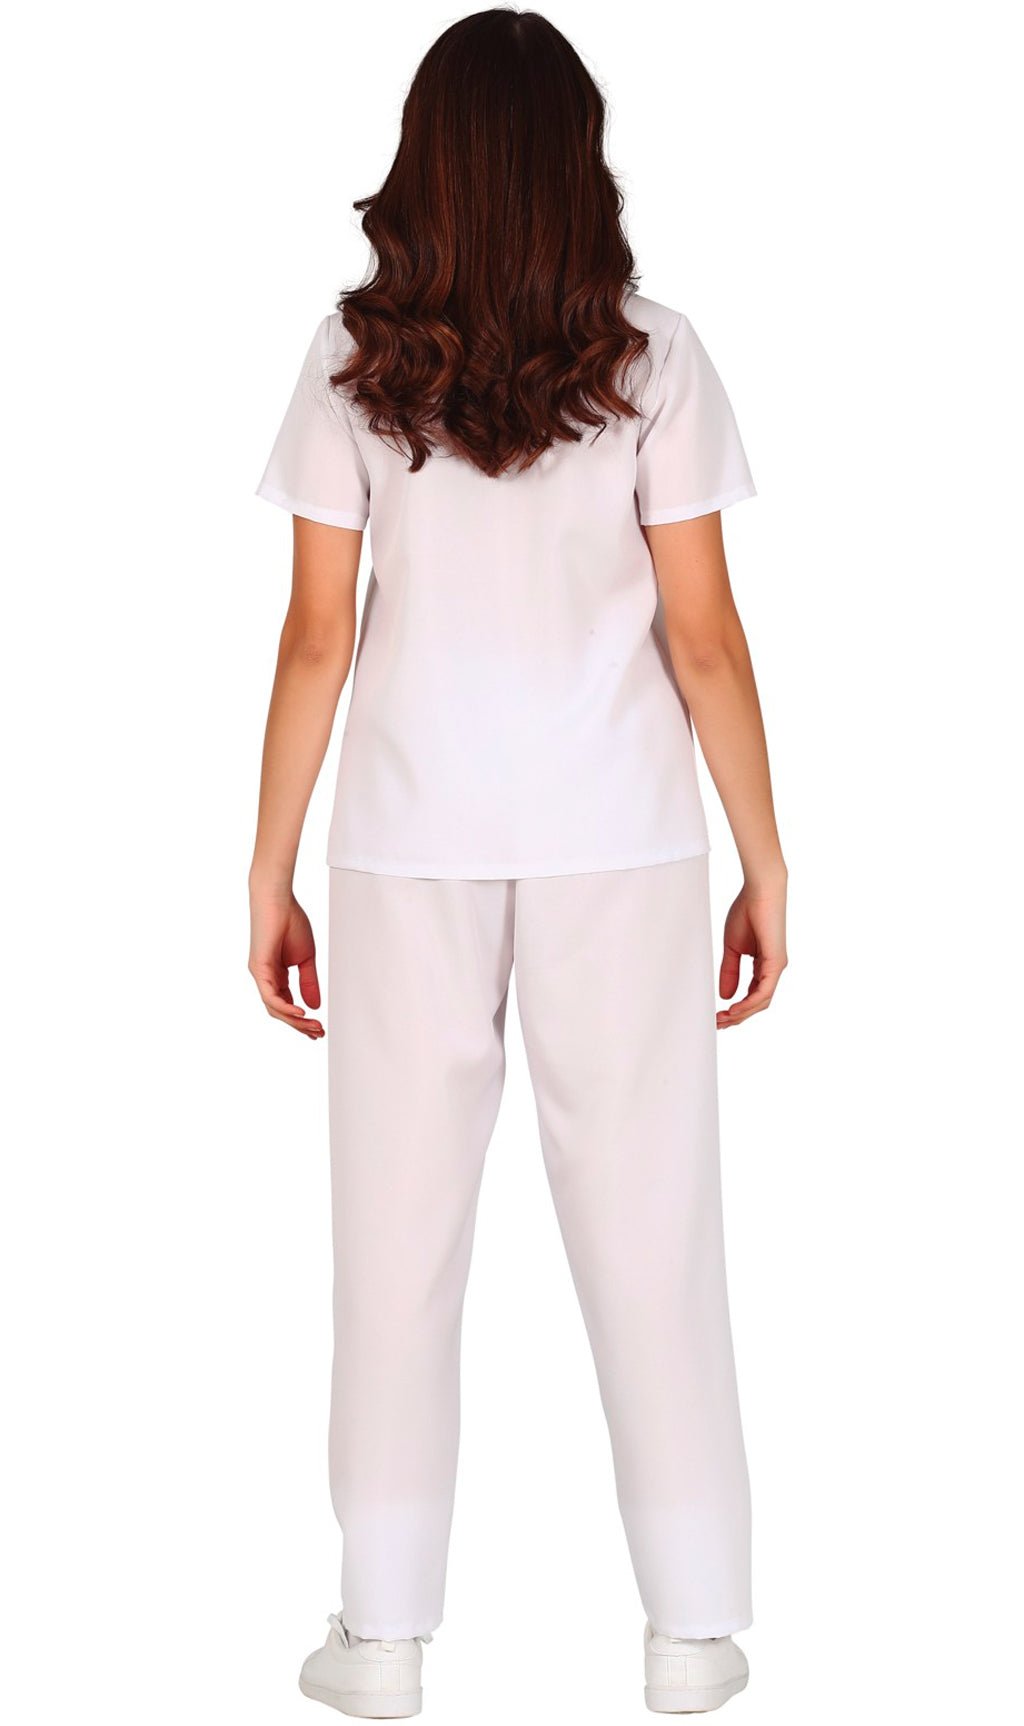 Disfraz de Enfermera Uniforme Blanco para mujer I Don Disfraz